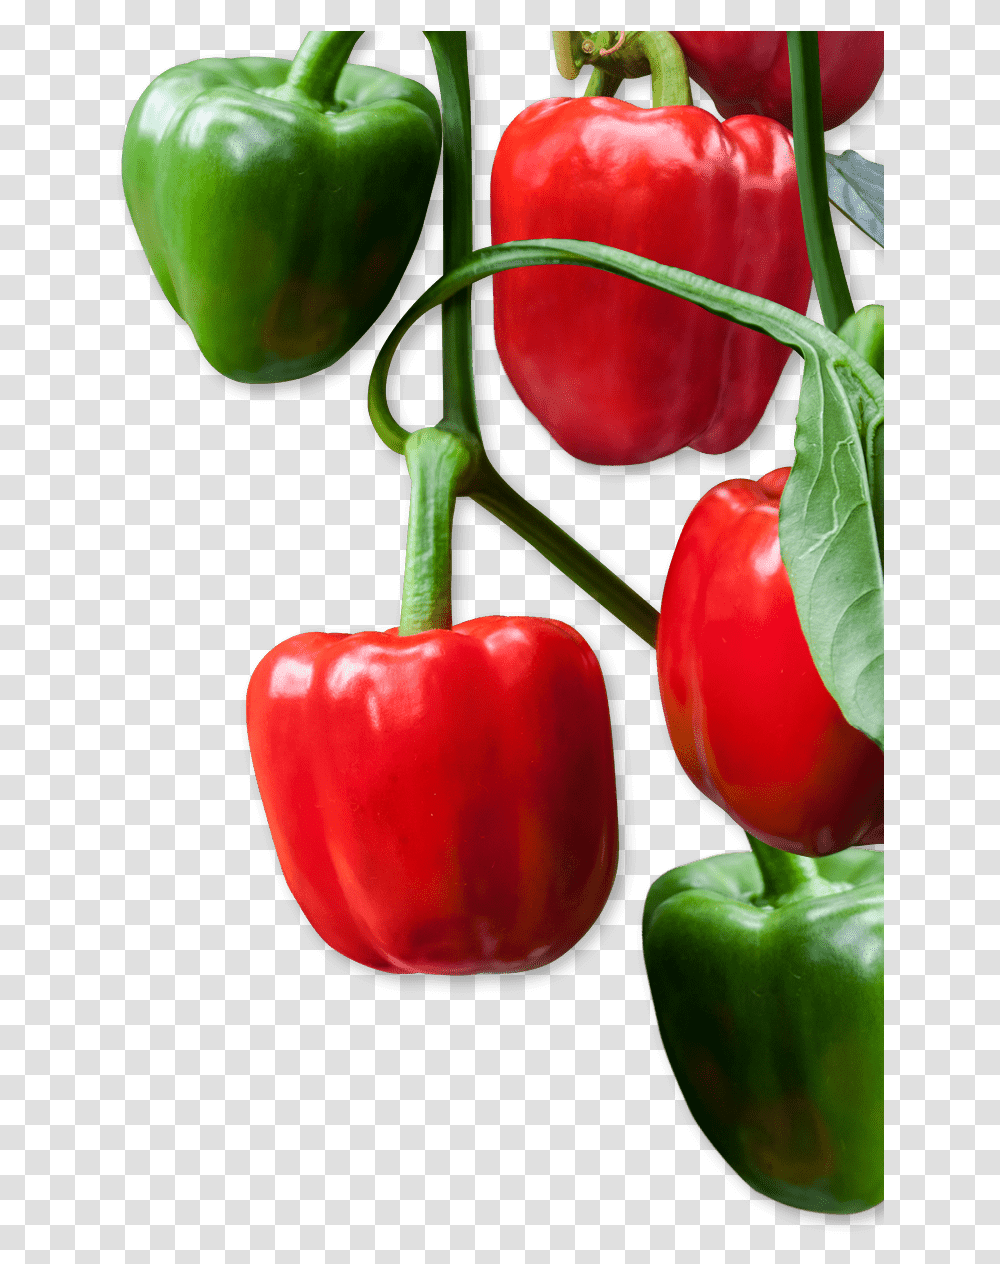 Red Bell Pepper, Plant, Food, Vegetable, Fruit Transparent Png